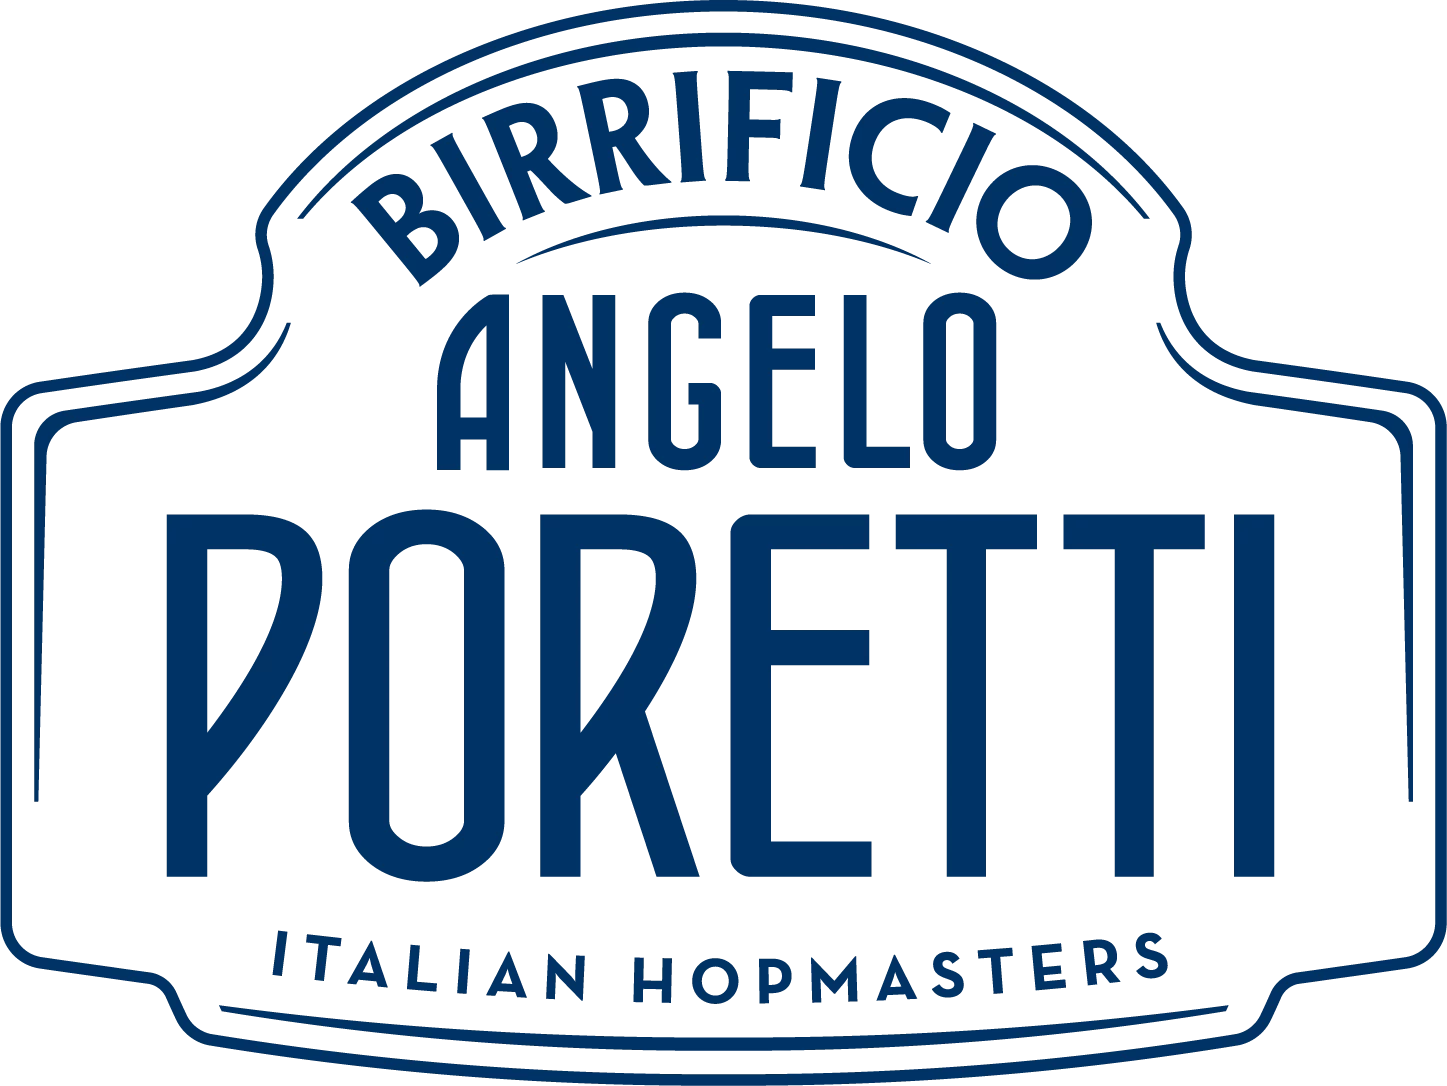 Poretti Logo 2